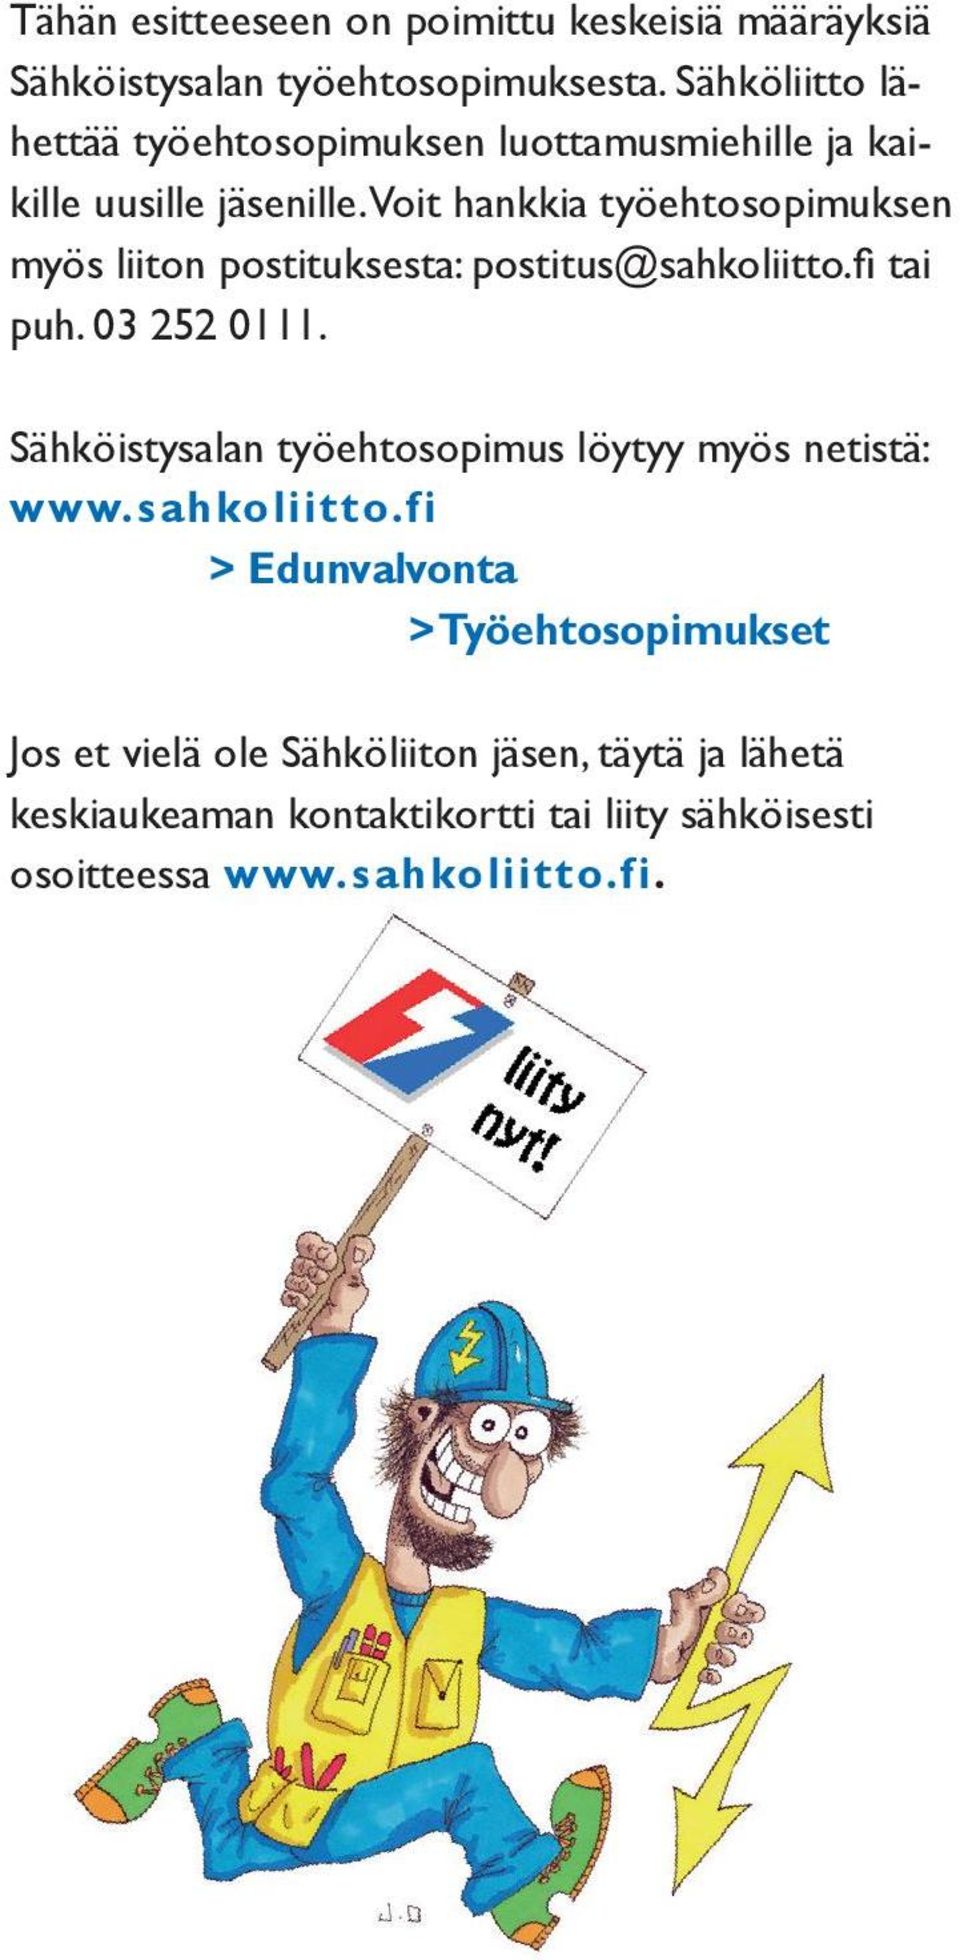 Voit hankkia työehtosopimuksen myös liiton postituksesta: postitus@sahkoliitto.fi tai puh. 03 252 0111.